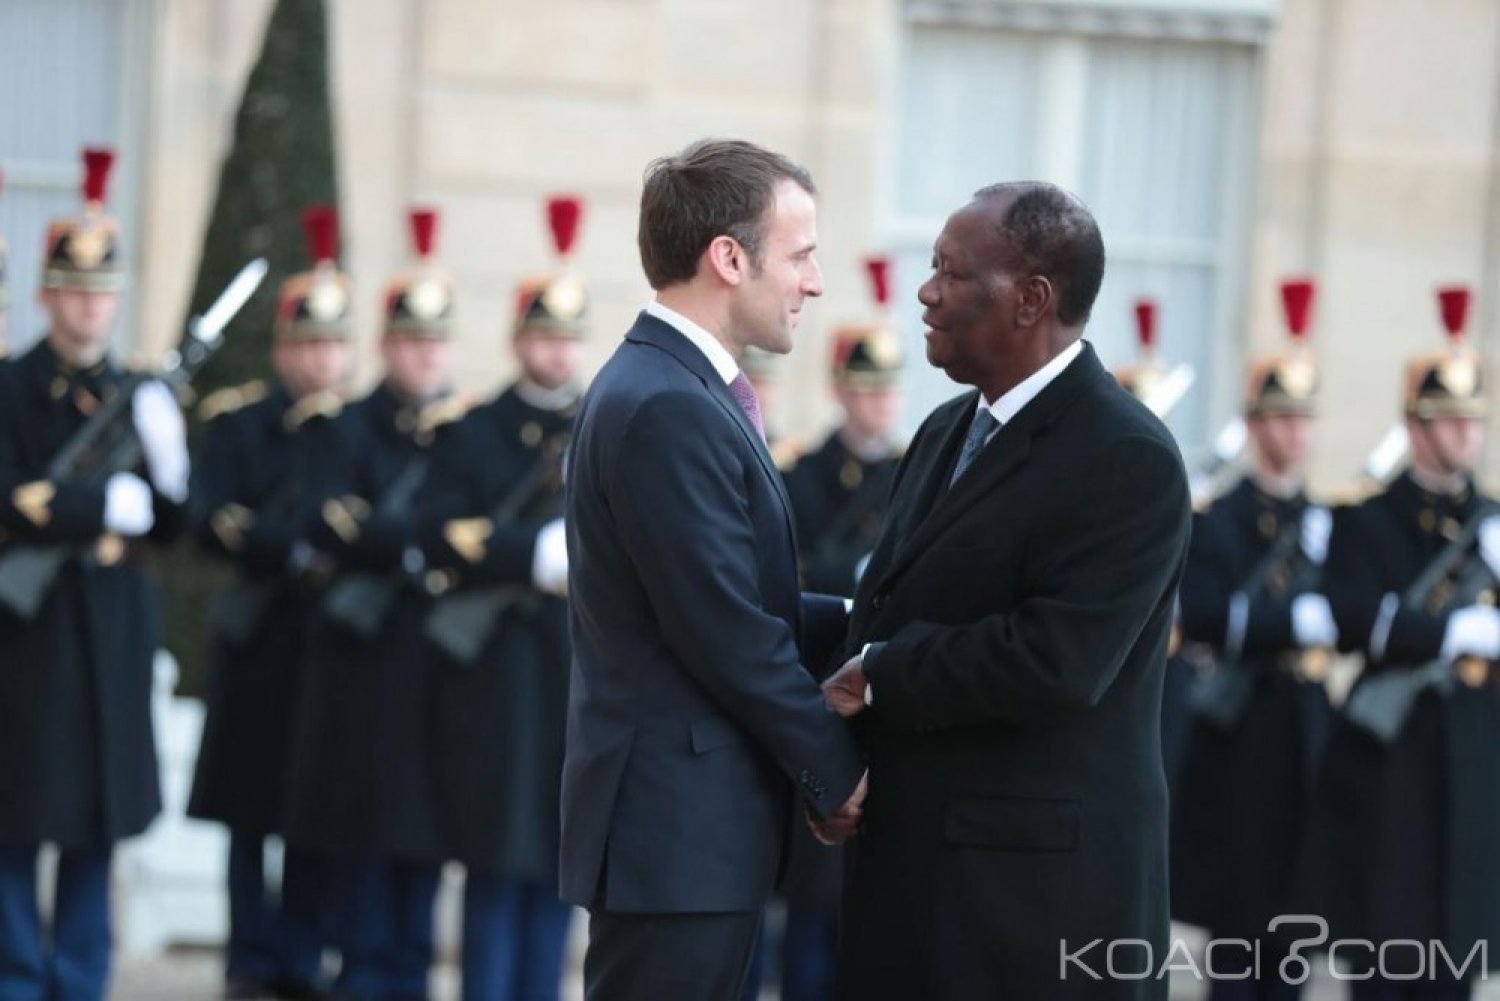 Côte d'Ivoire-France : 2020, un proche de Macron confie «La France préfère encourager la continuité de la stabilité que la voie de l'inconnu»